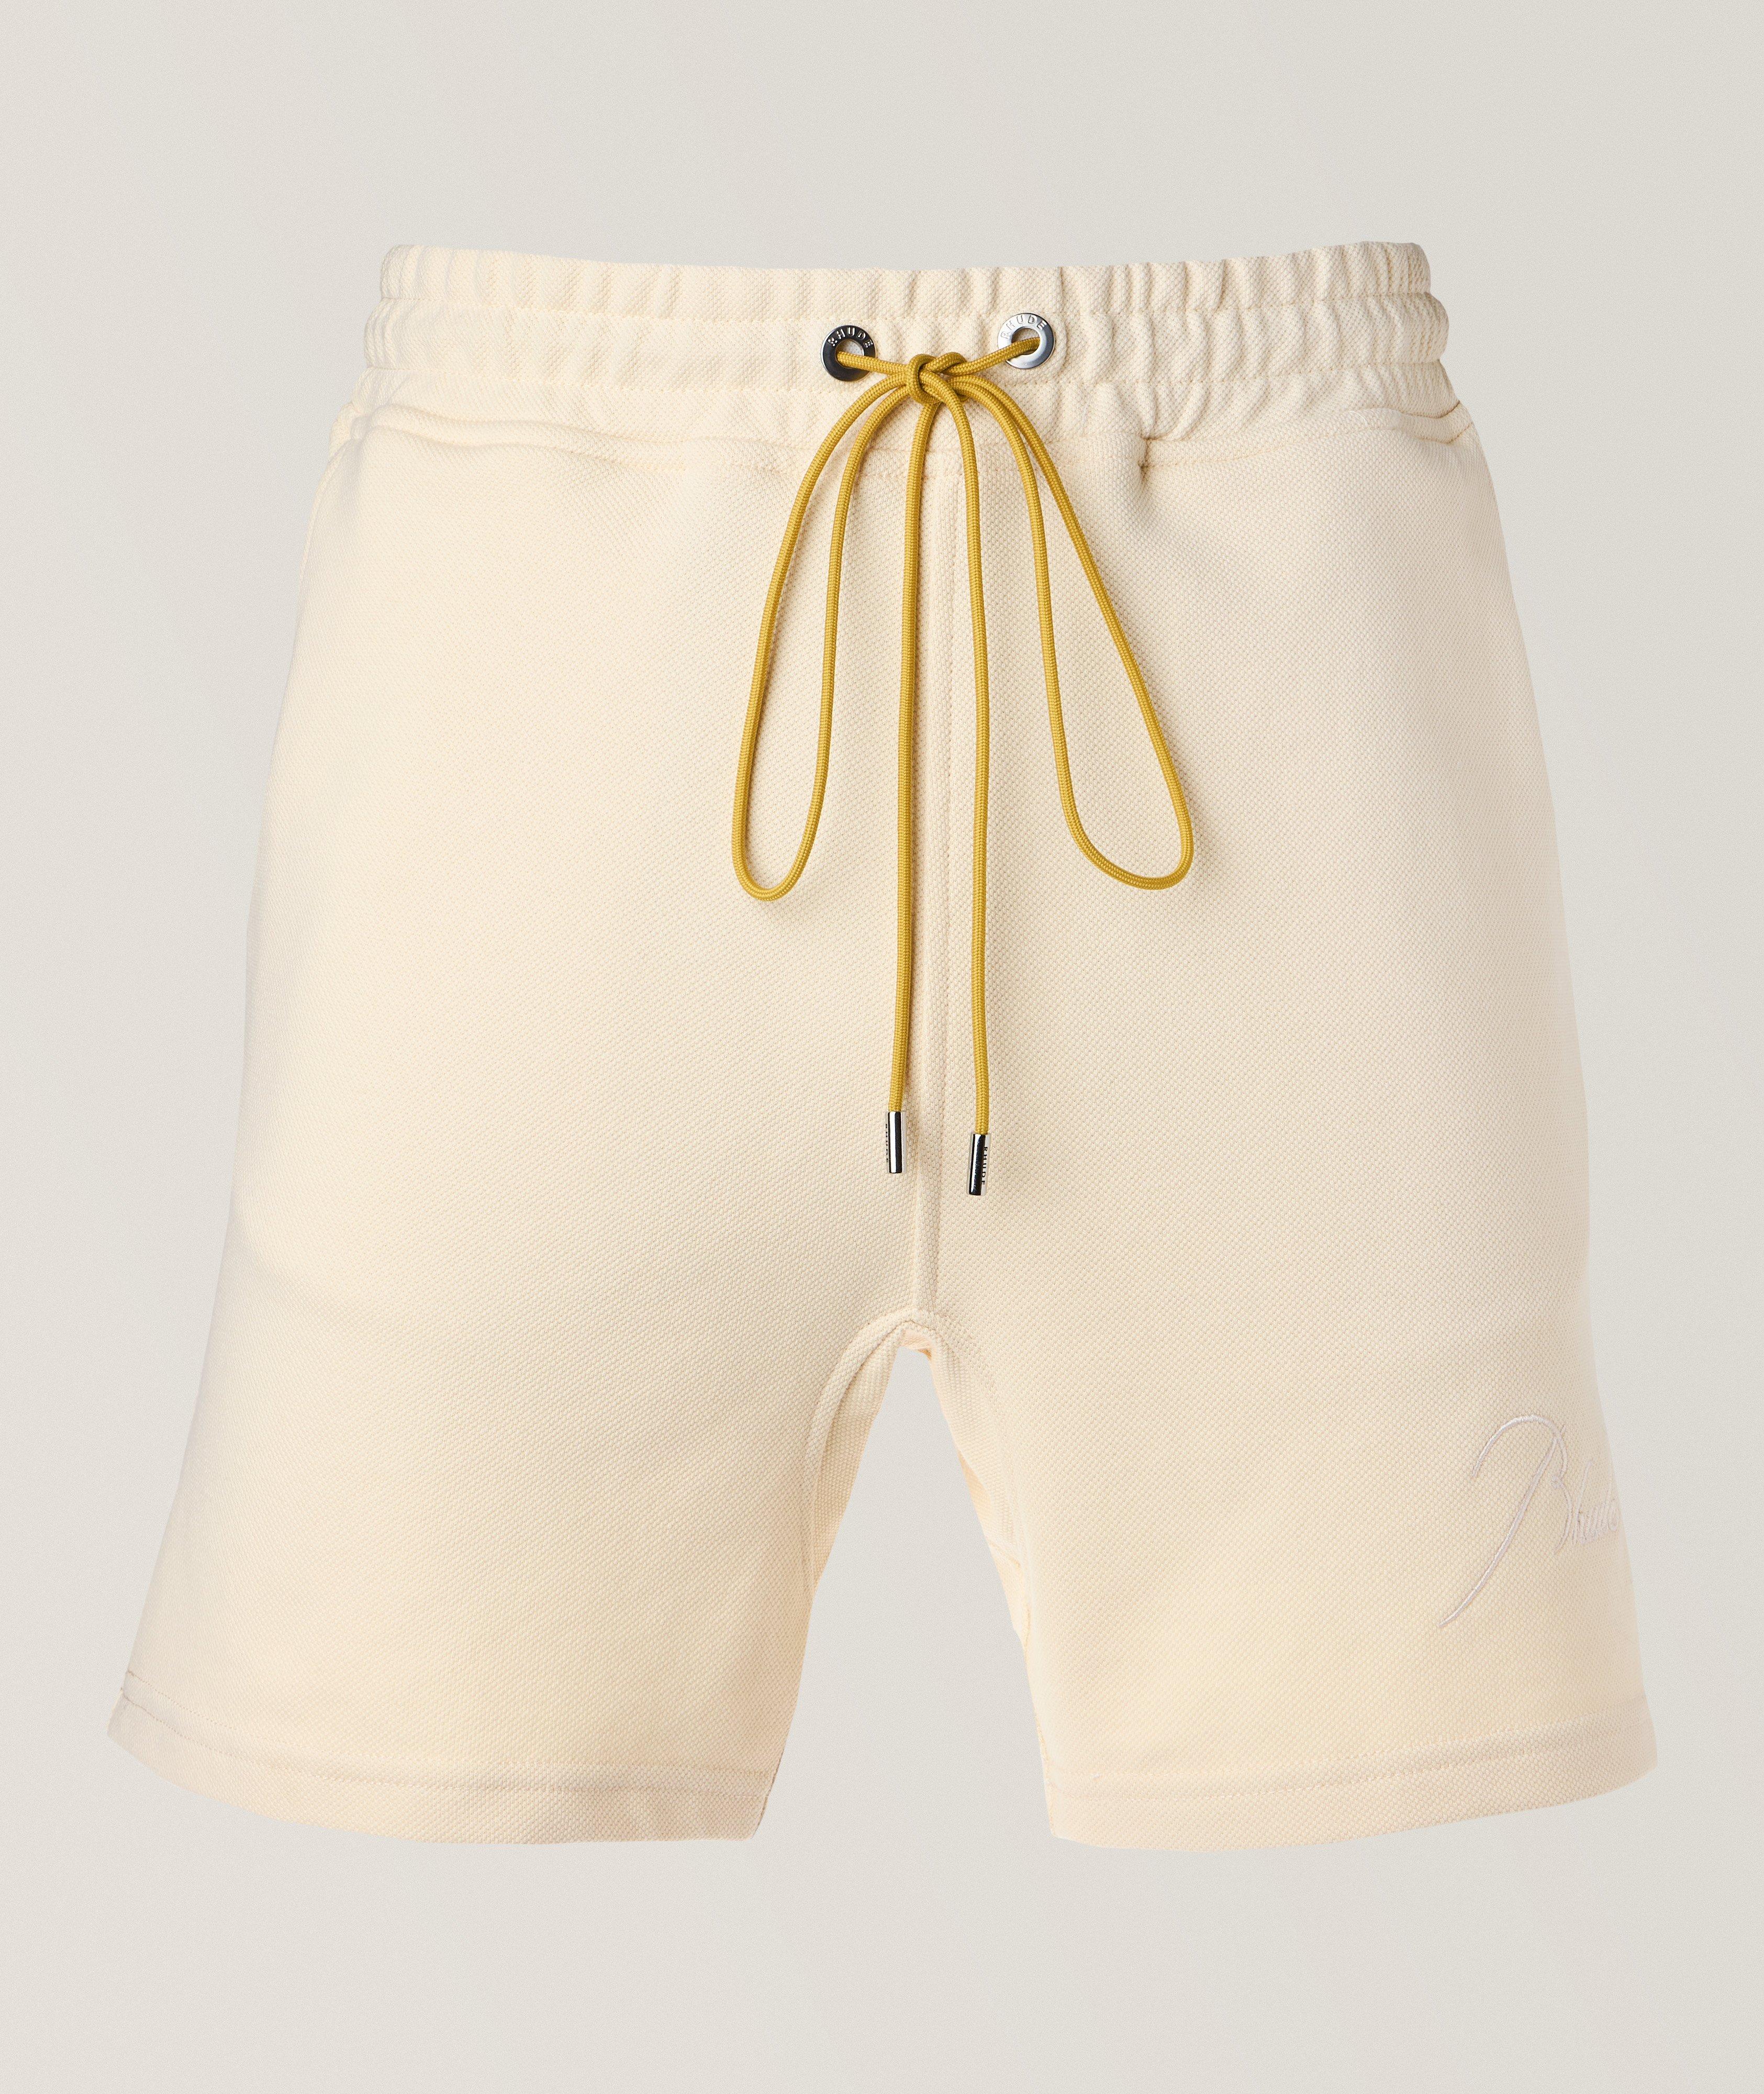 Piqué Cotton Shorts image 0